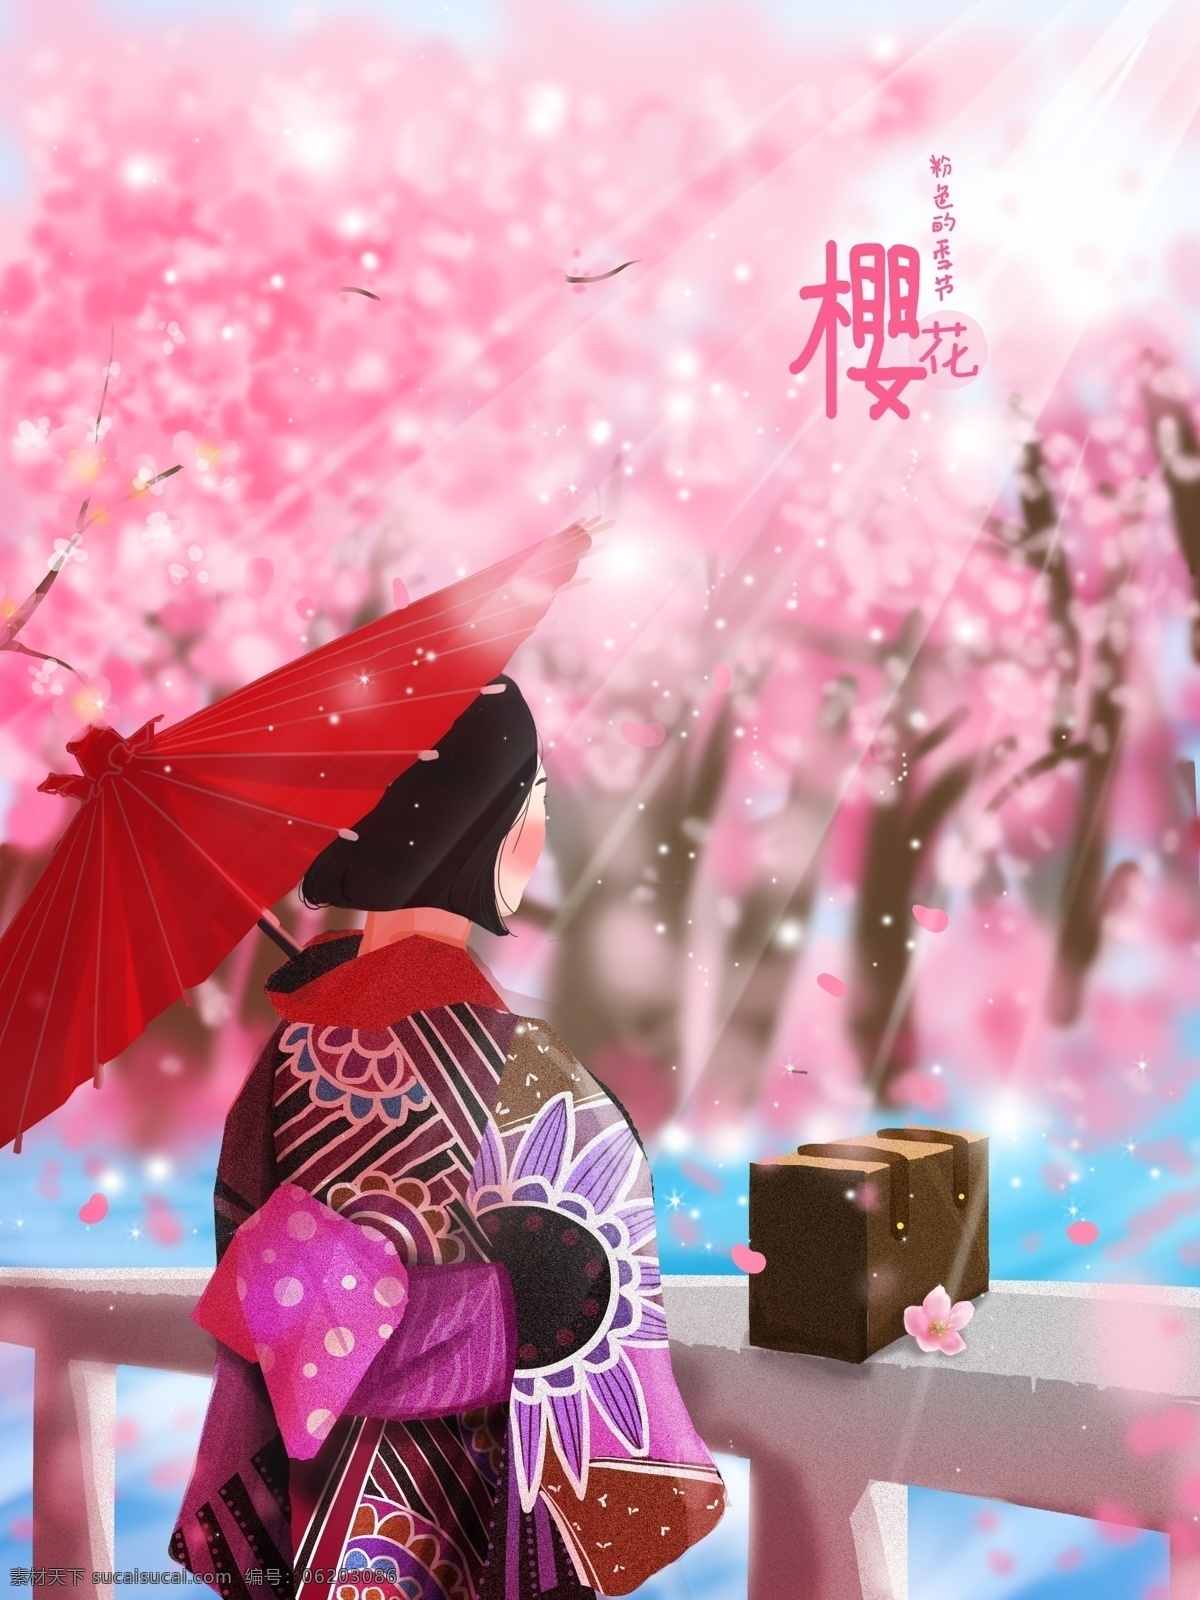 樱花节 女孩 清新 插画 红伞 和服 樱花 唯美 小清新 阳光 粉色 配图 壁纸 桌面